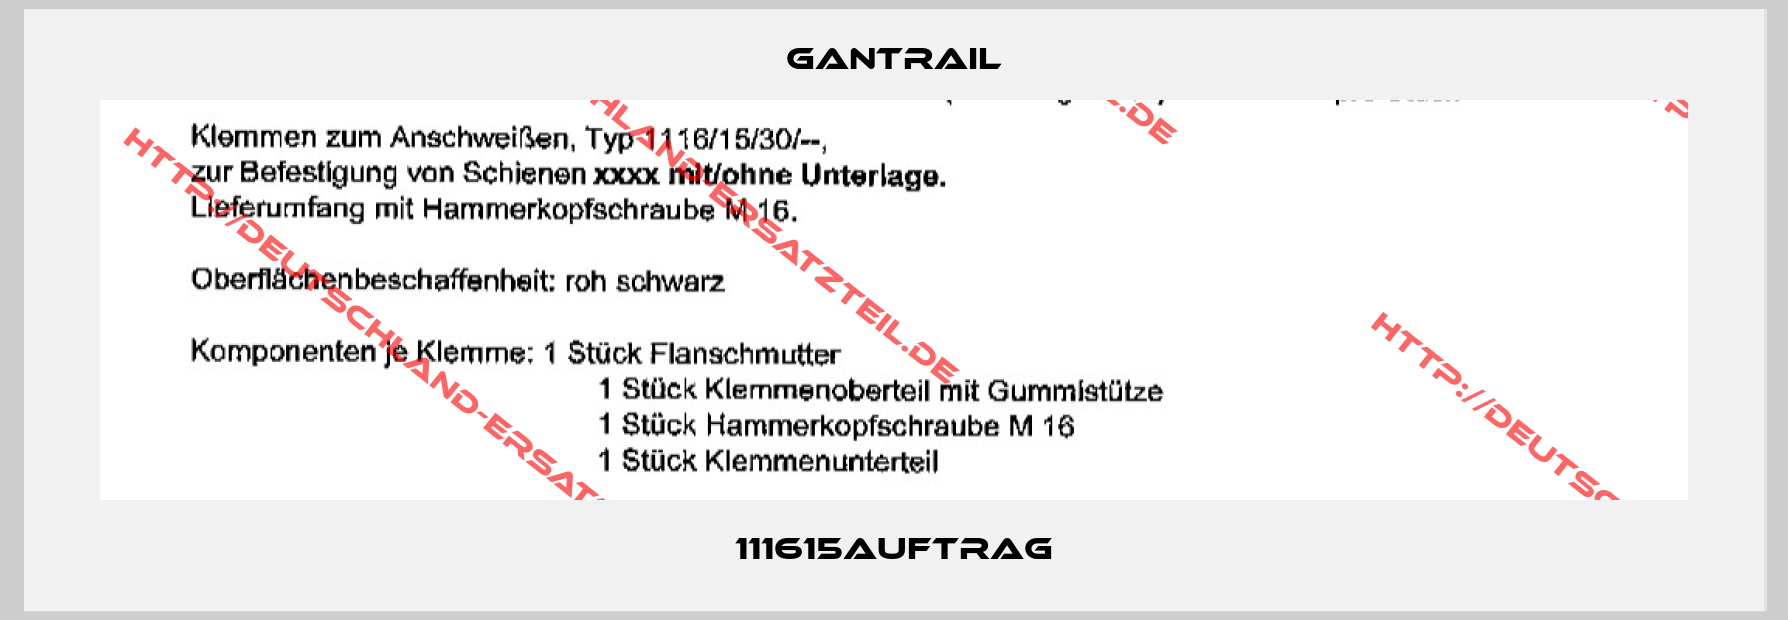 Gantrail-111615Auftrag